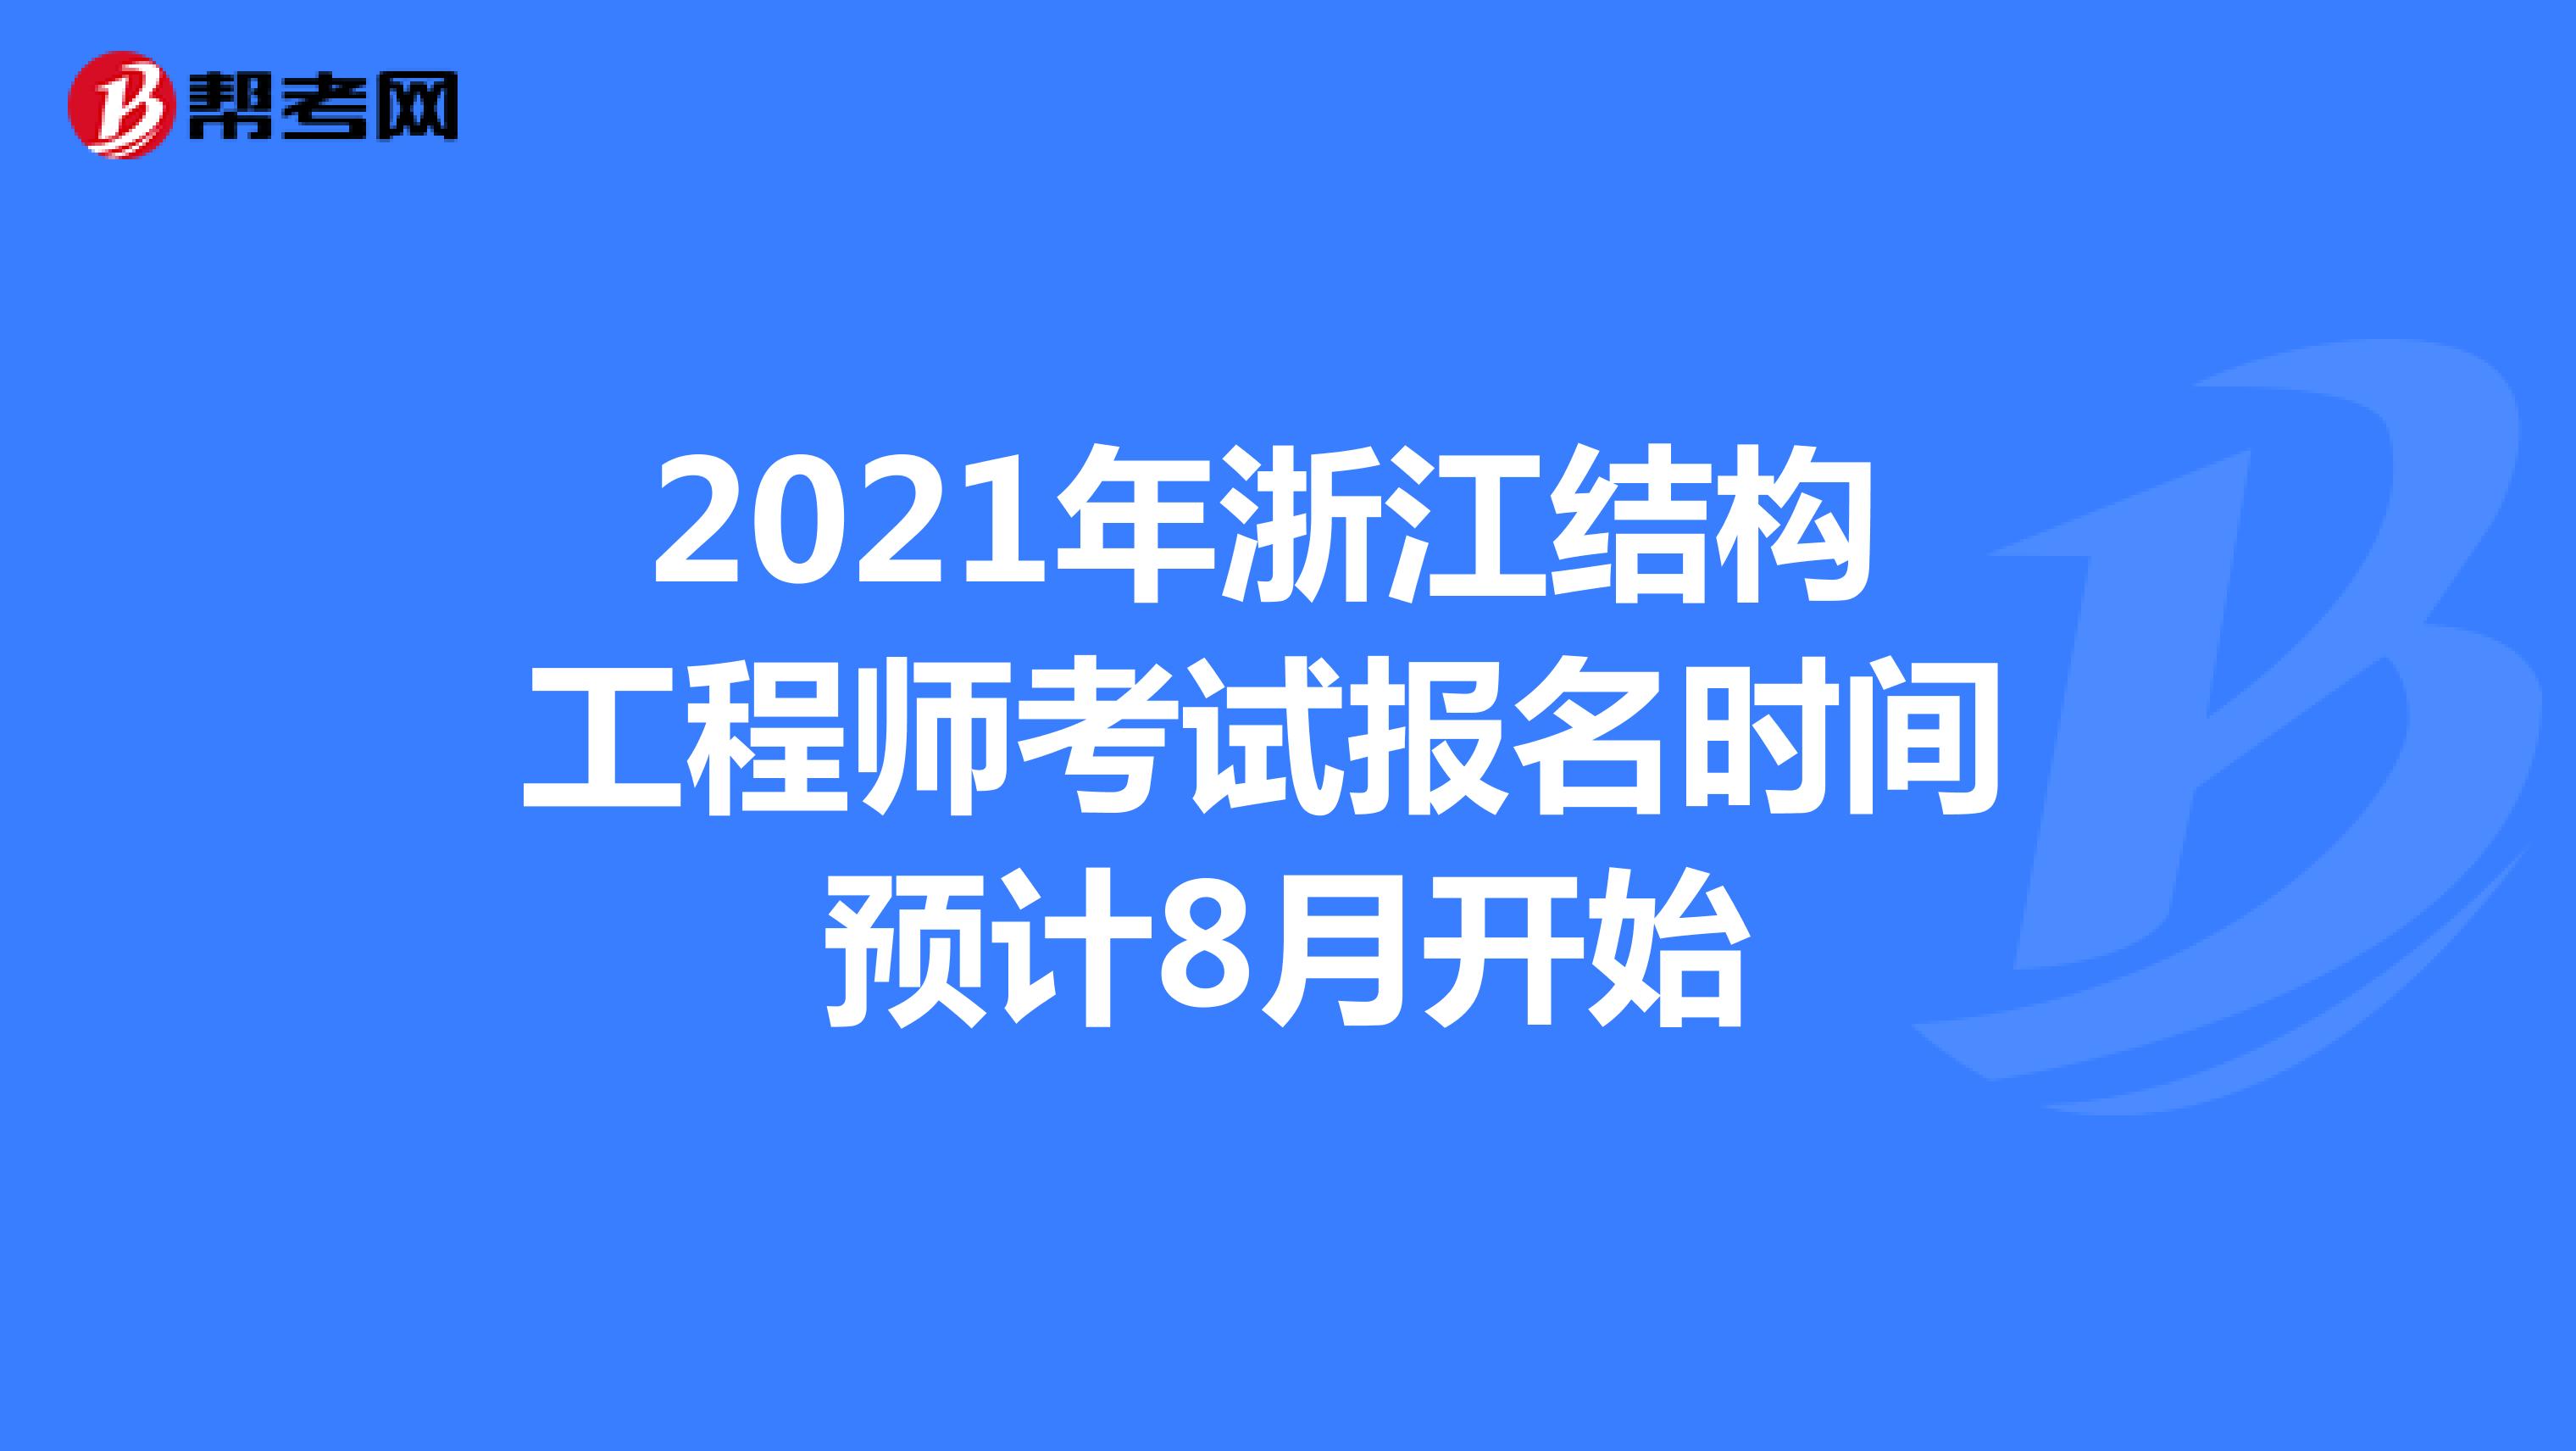 2021年浙江结构工程师考试报名时间预计8月开始